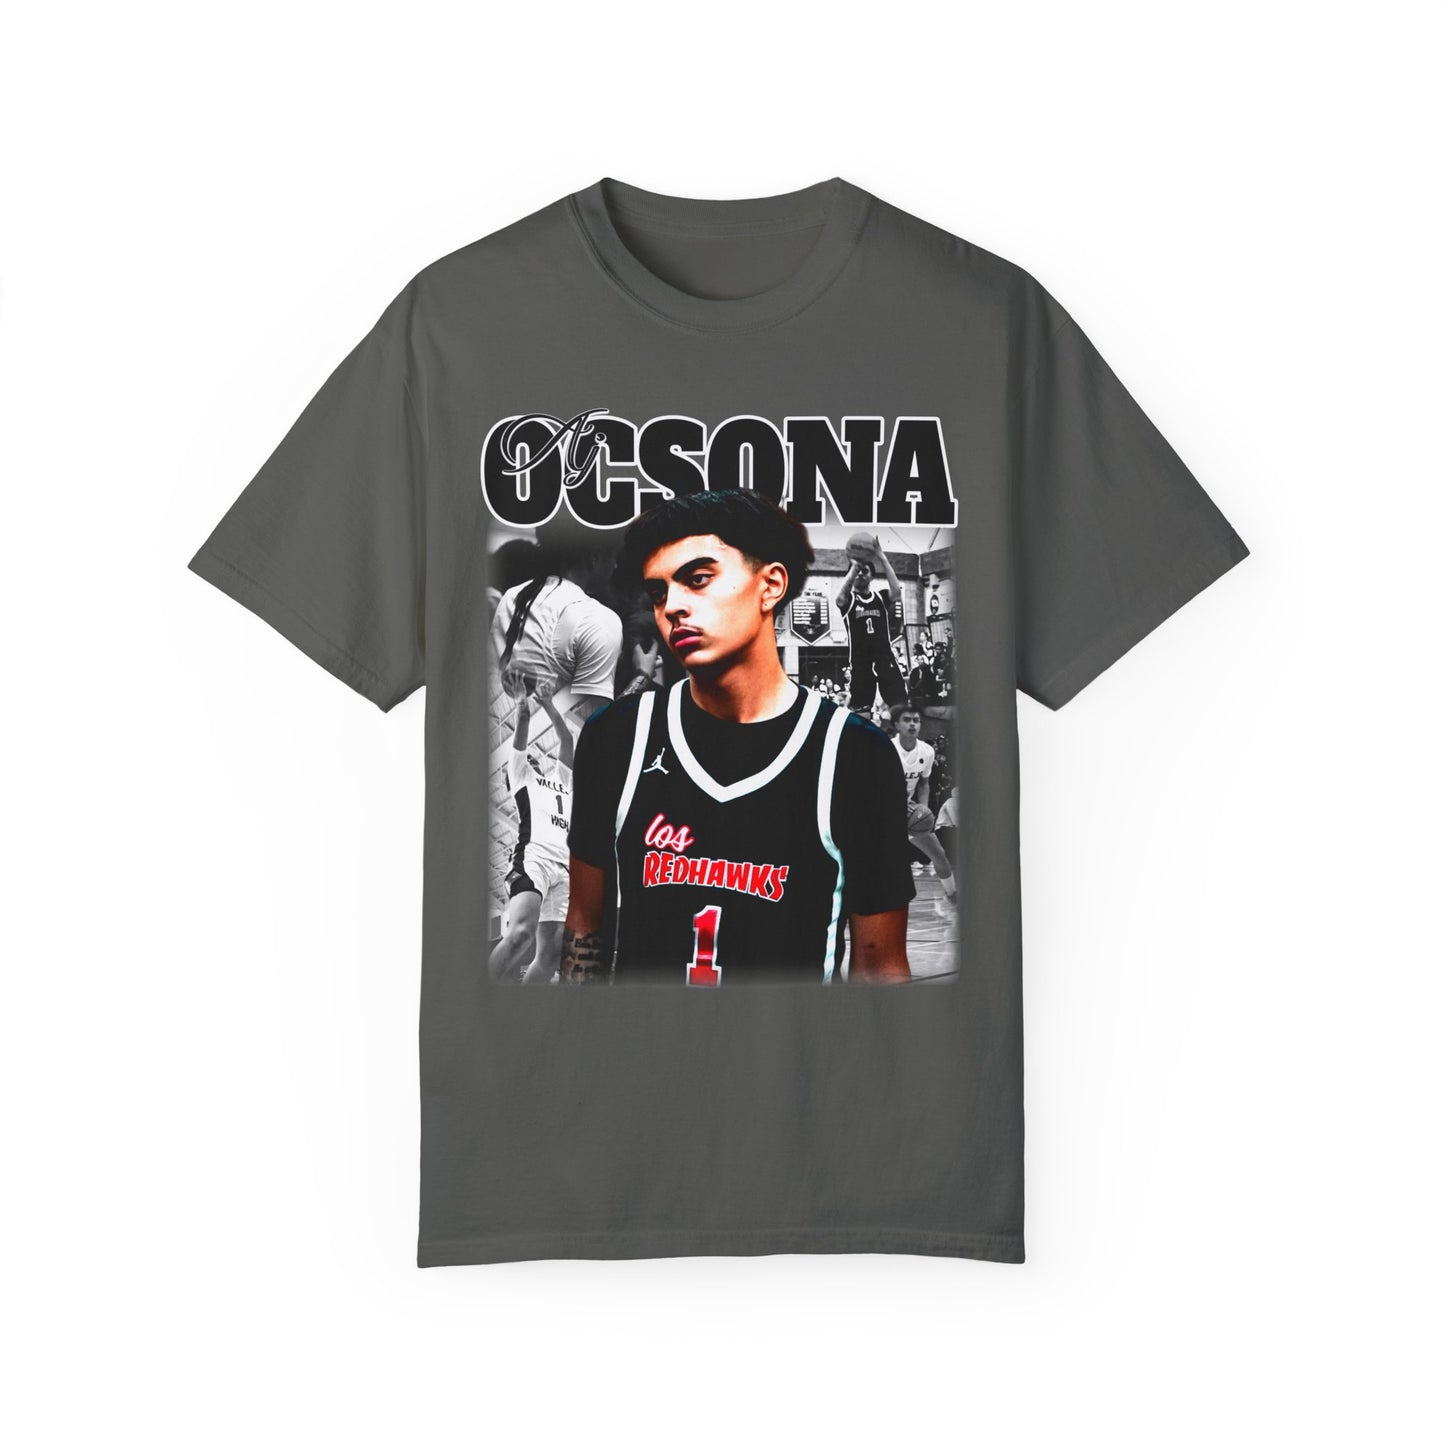 AJ Ocsona Graphic T-shirt